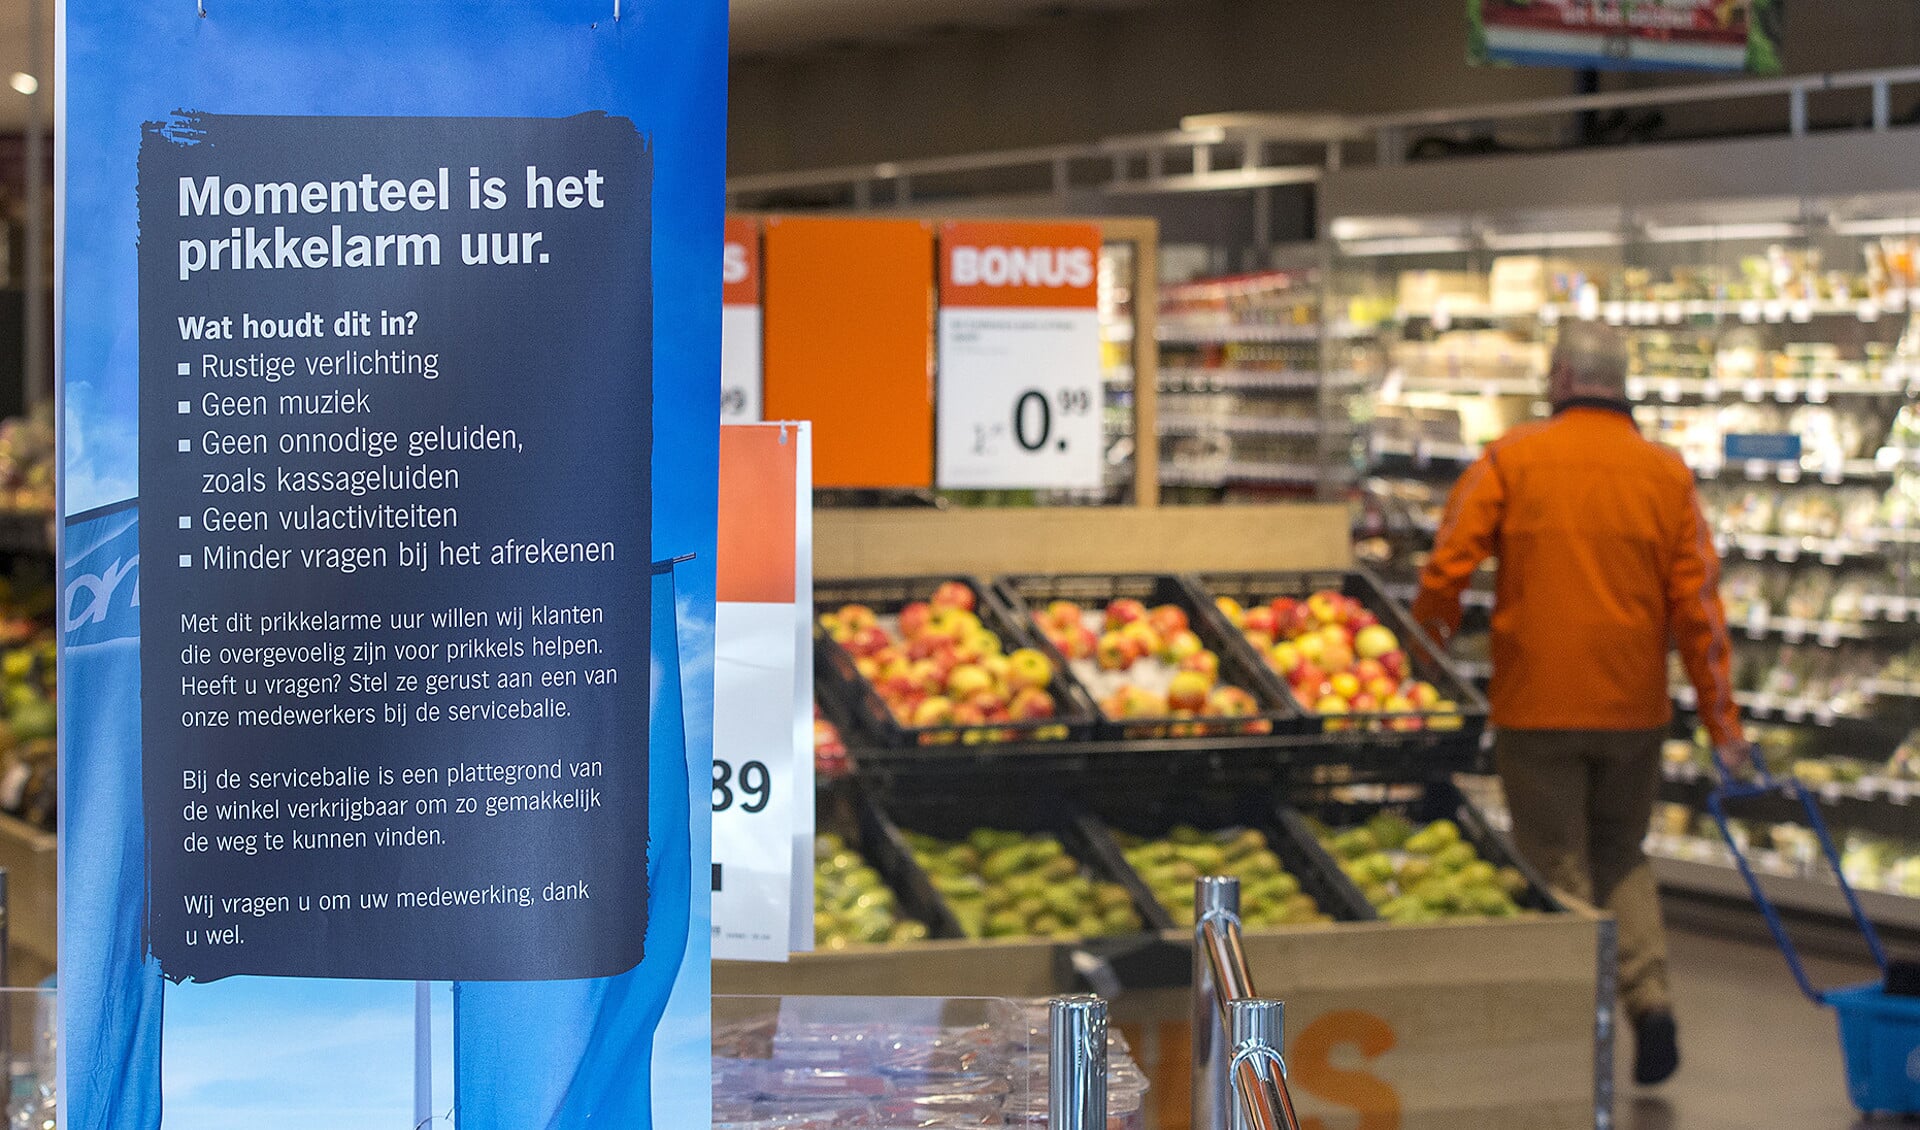 Een poster kondigt het prikkelarm winkelen aan in de Albert Heijn in Sint Michielsgestel.